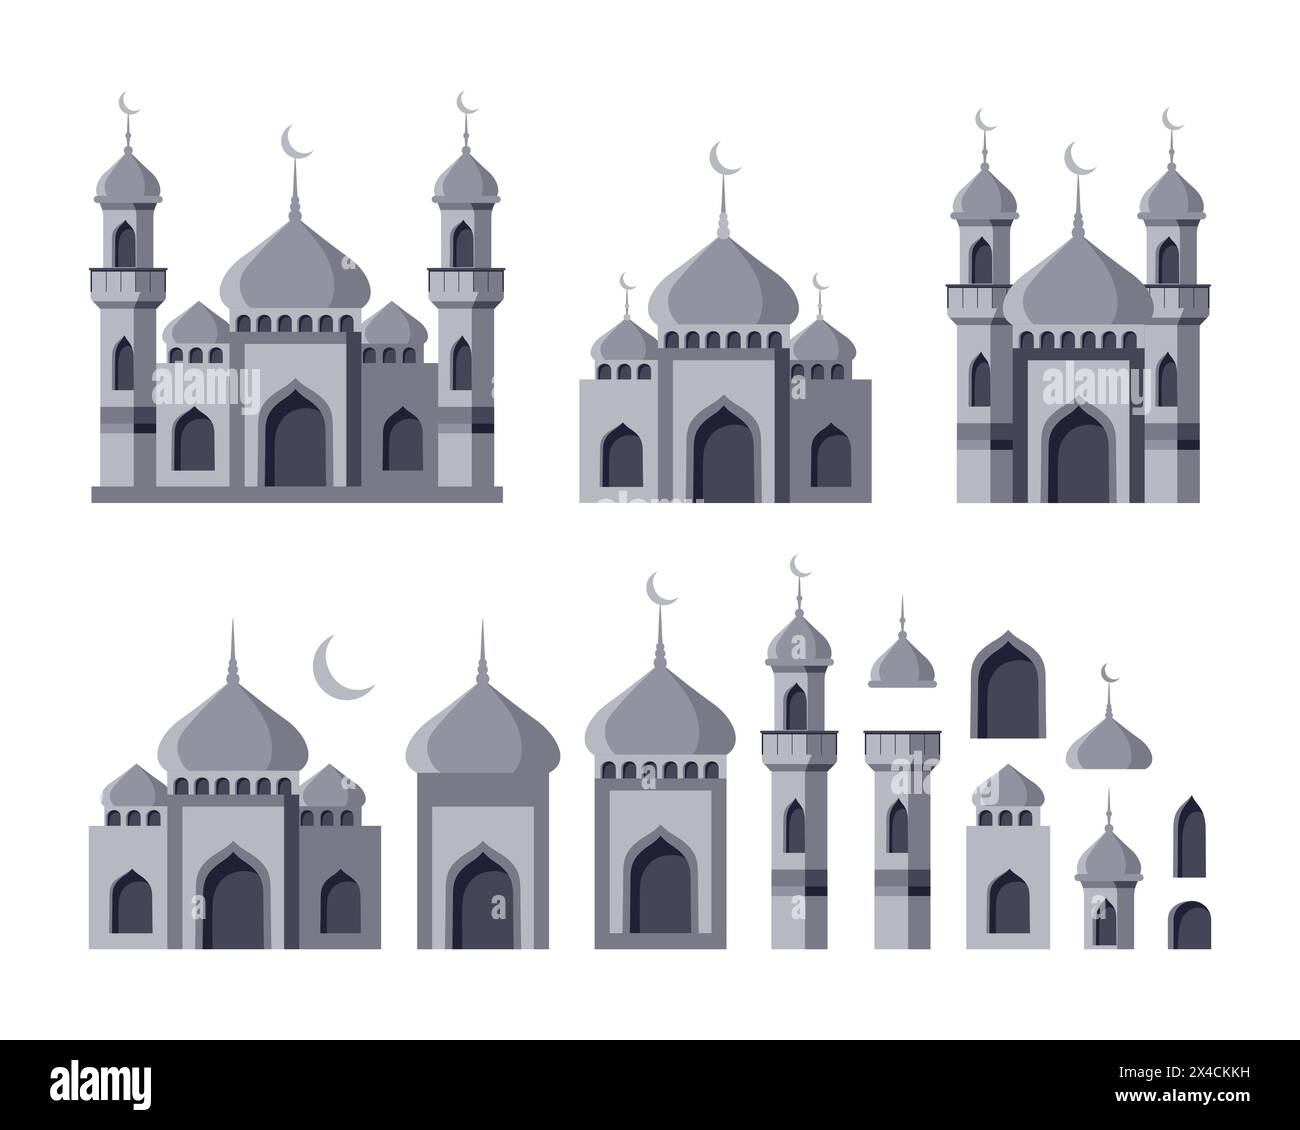 Serie di moschee islamiche e minareti con cupola. Collezione di elementi architettonici arabi. Stile piatto. Illustrazione vettoriale. Illustrazione Vettoriale